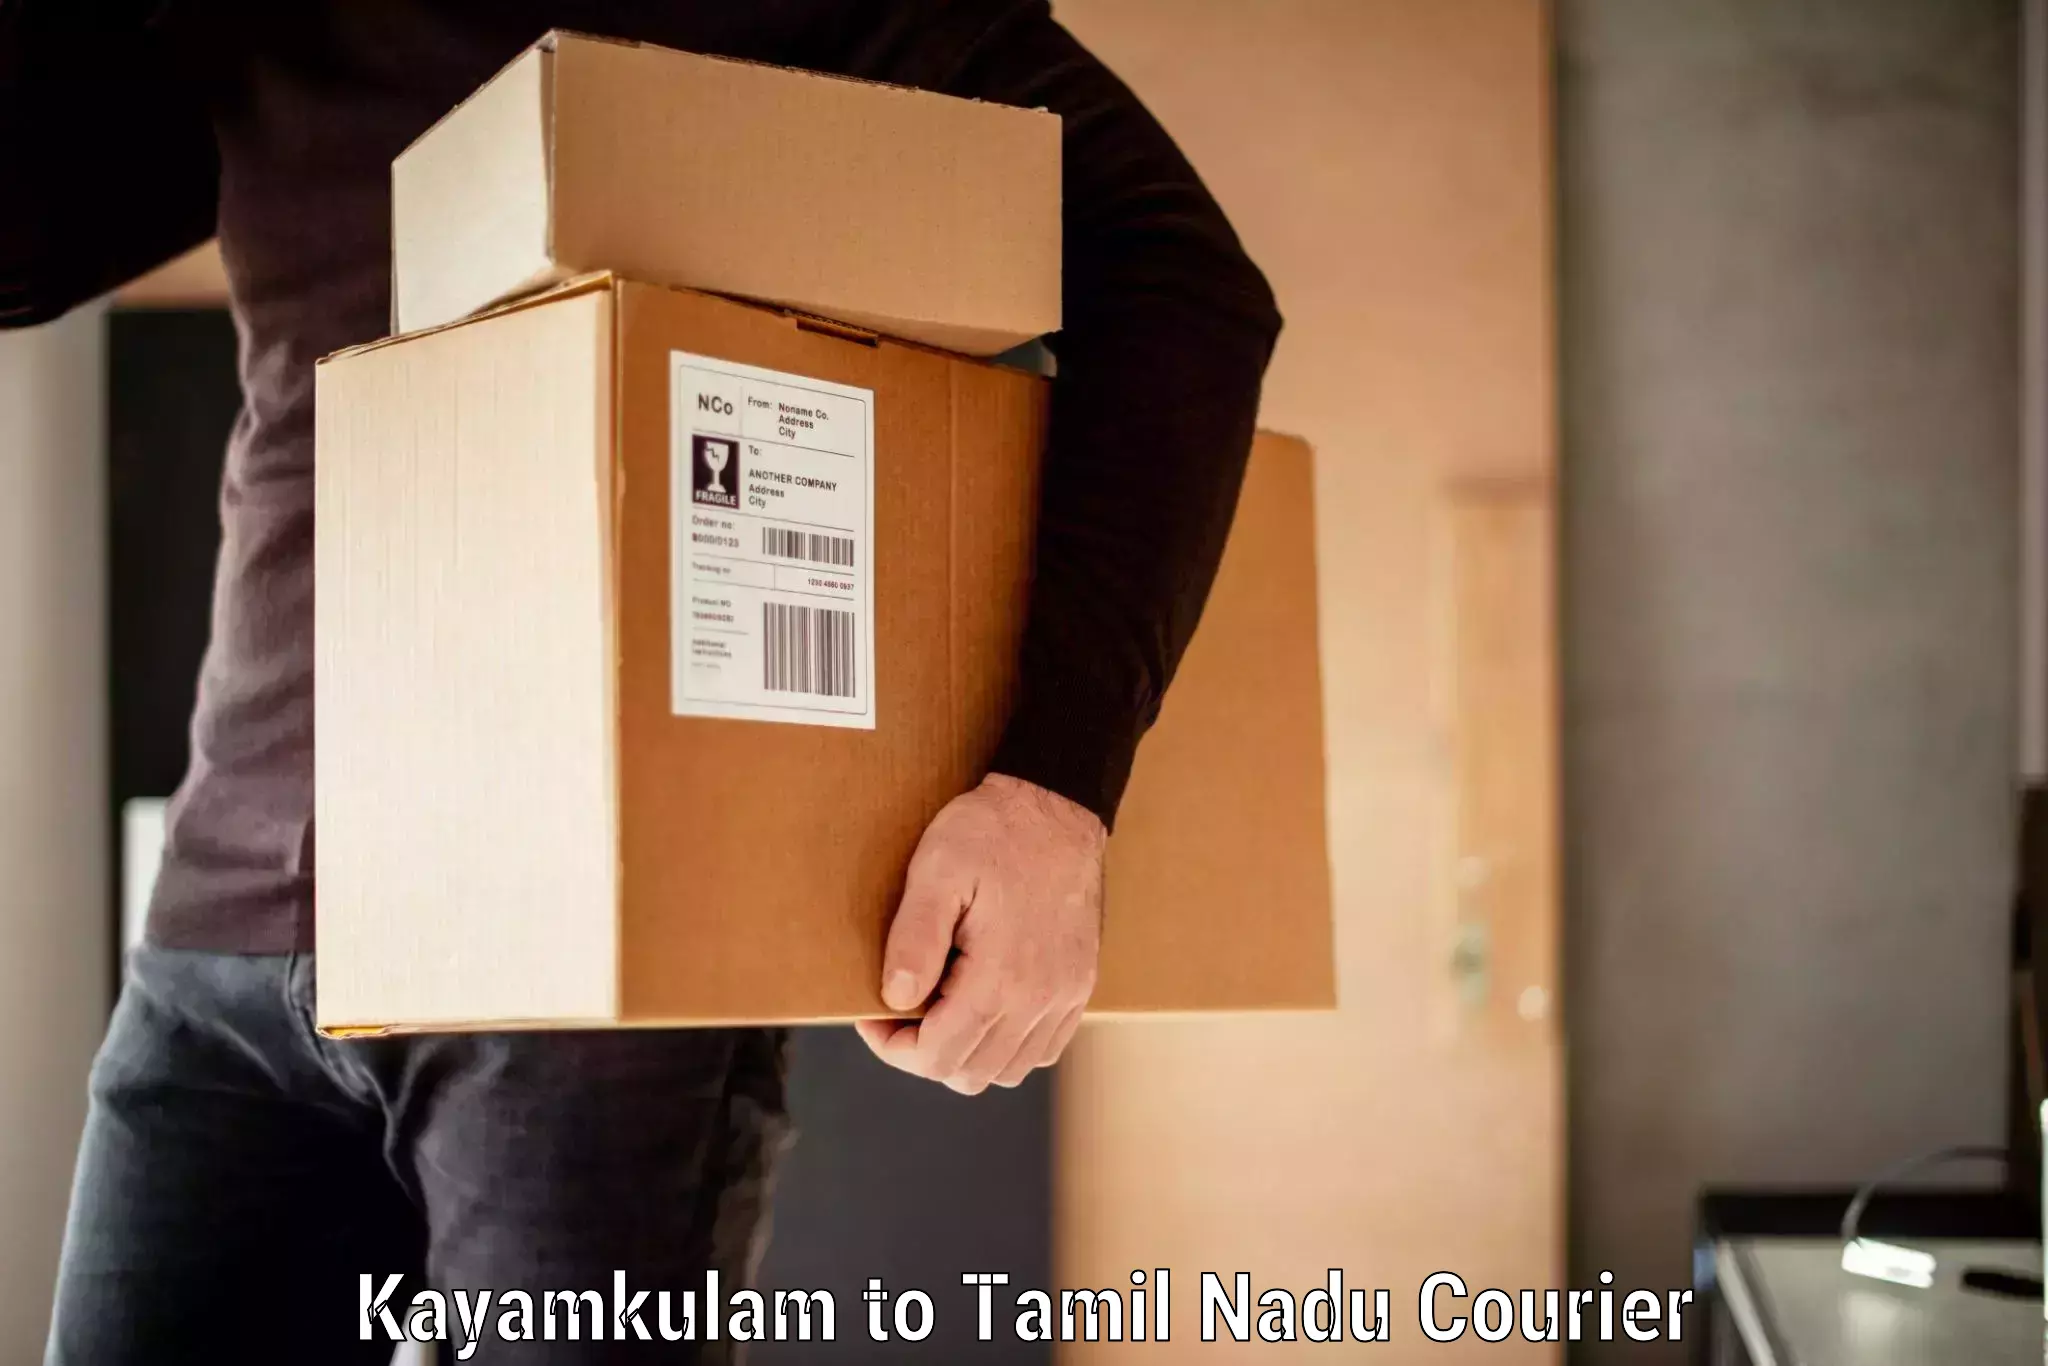 Luggage shipment specialists Kayamkulam to Thiruporur